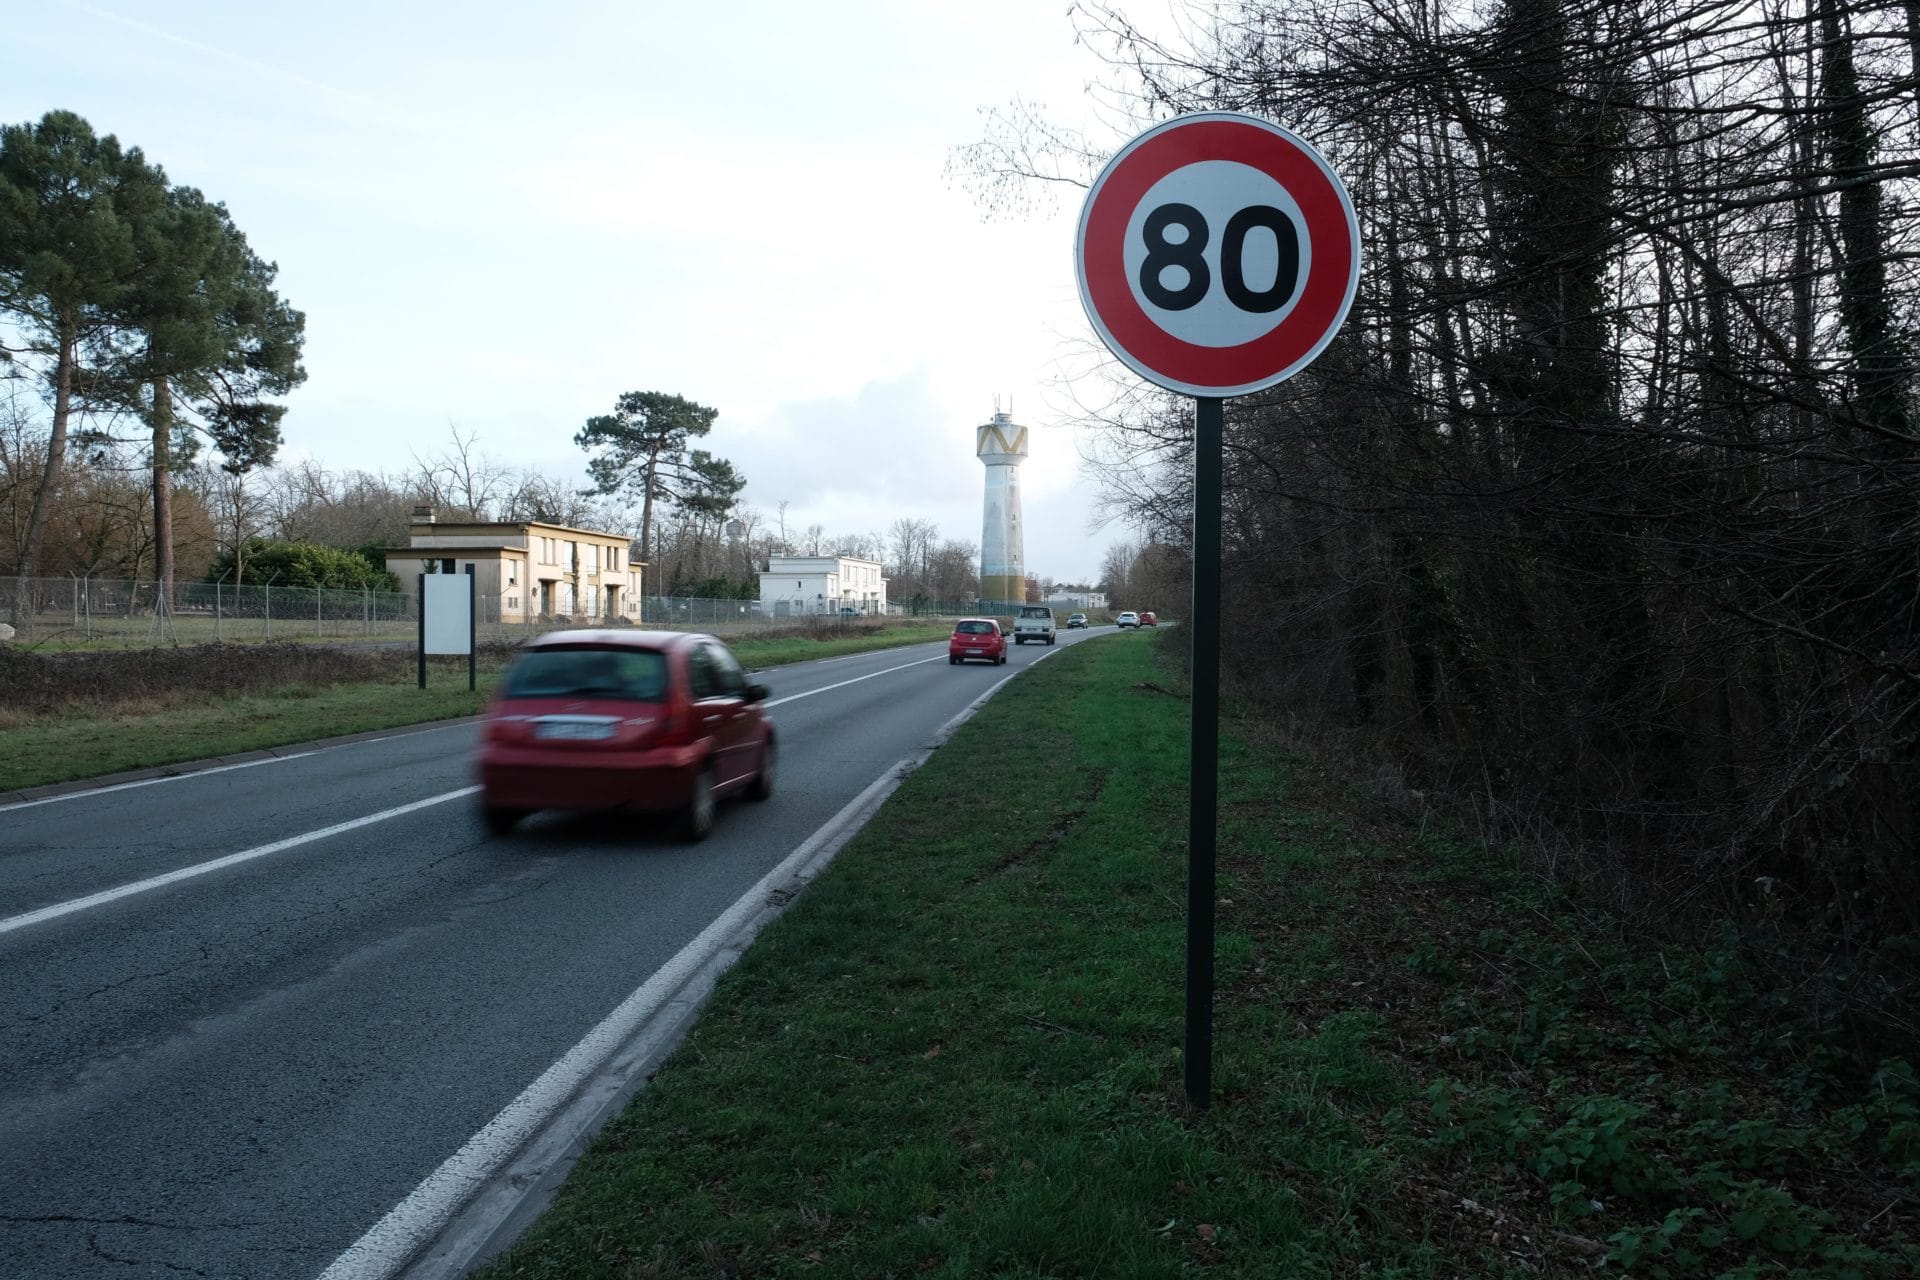 Moins de morts sur les routes de Gironde passées à 80 km/h